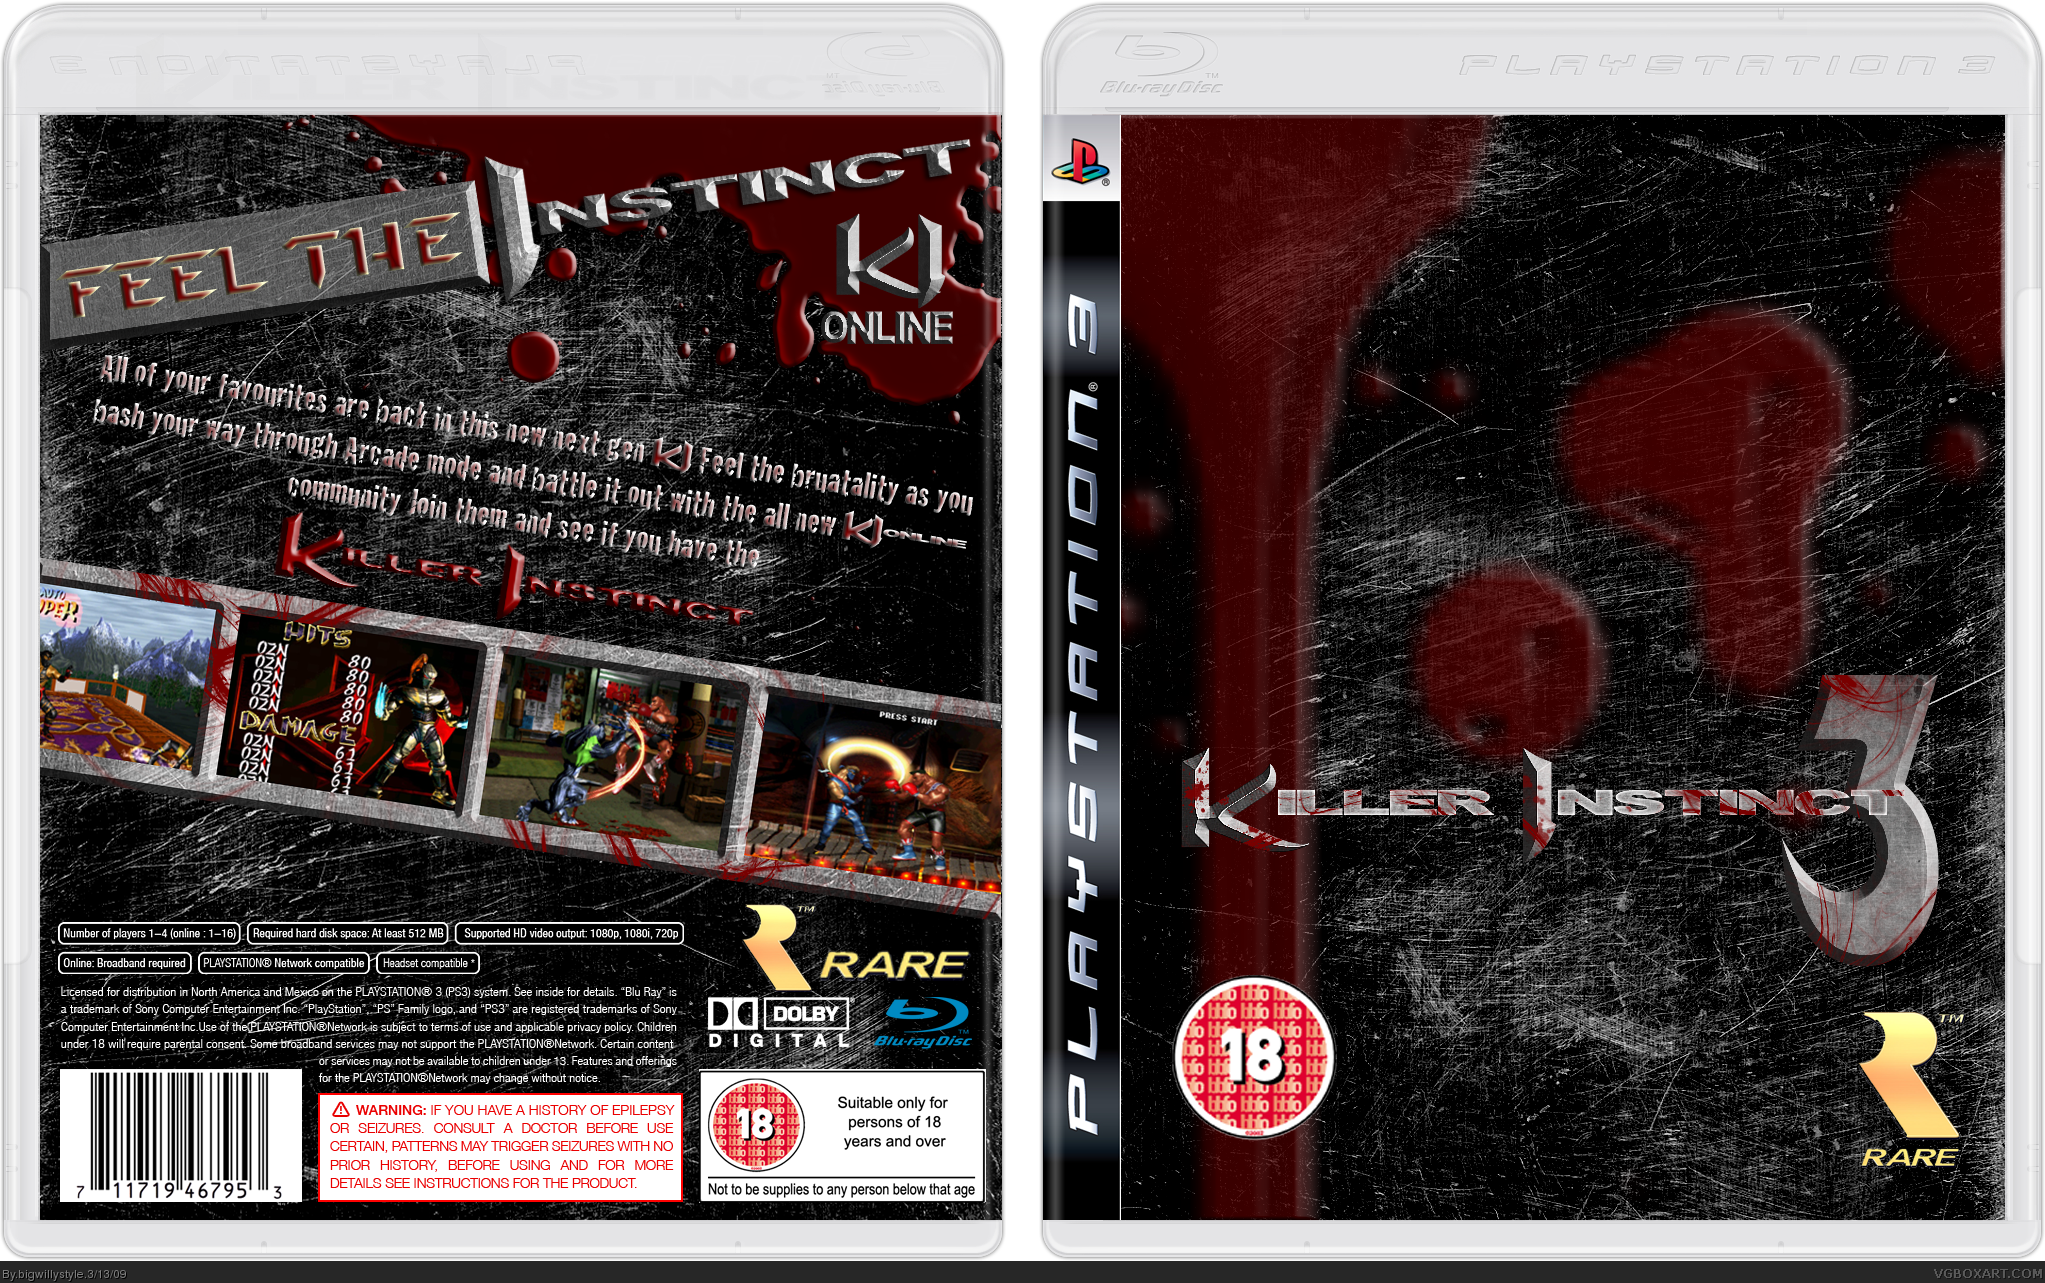 Killer Instinct 3 box cover